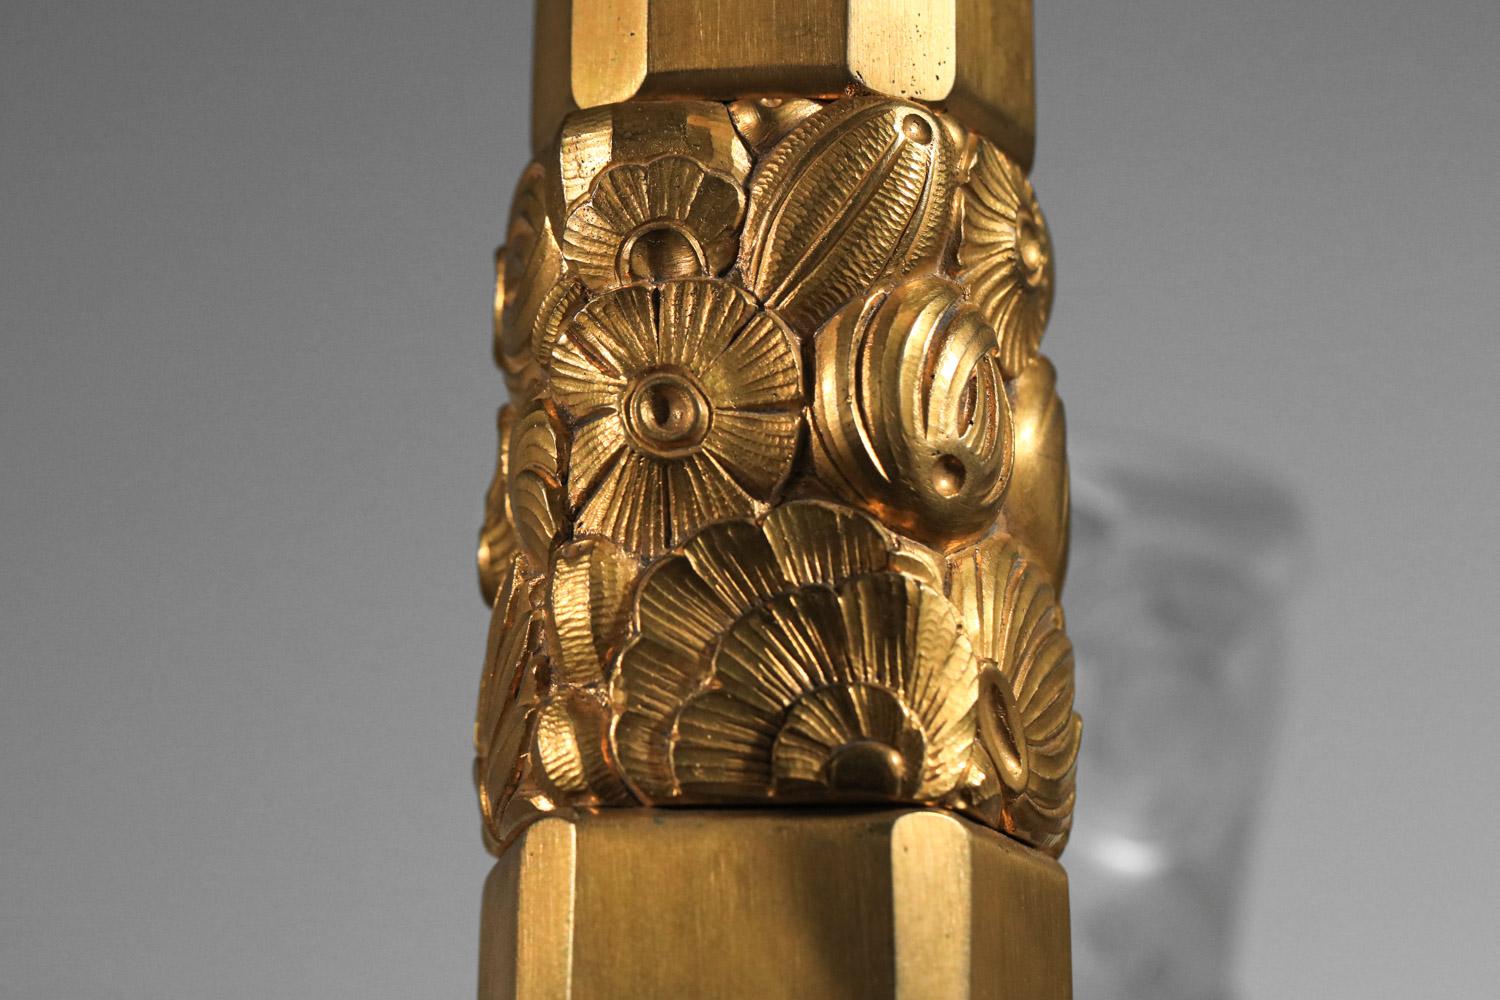 rare gilded bronze art deco chandelier signed J.Coduré Lyon 1930s art nouveau  For Sale 9